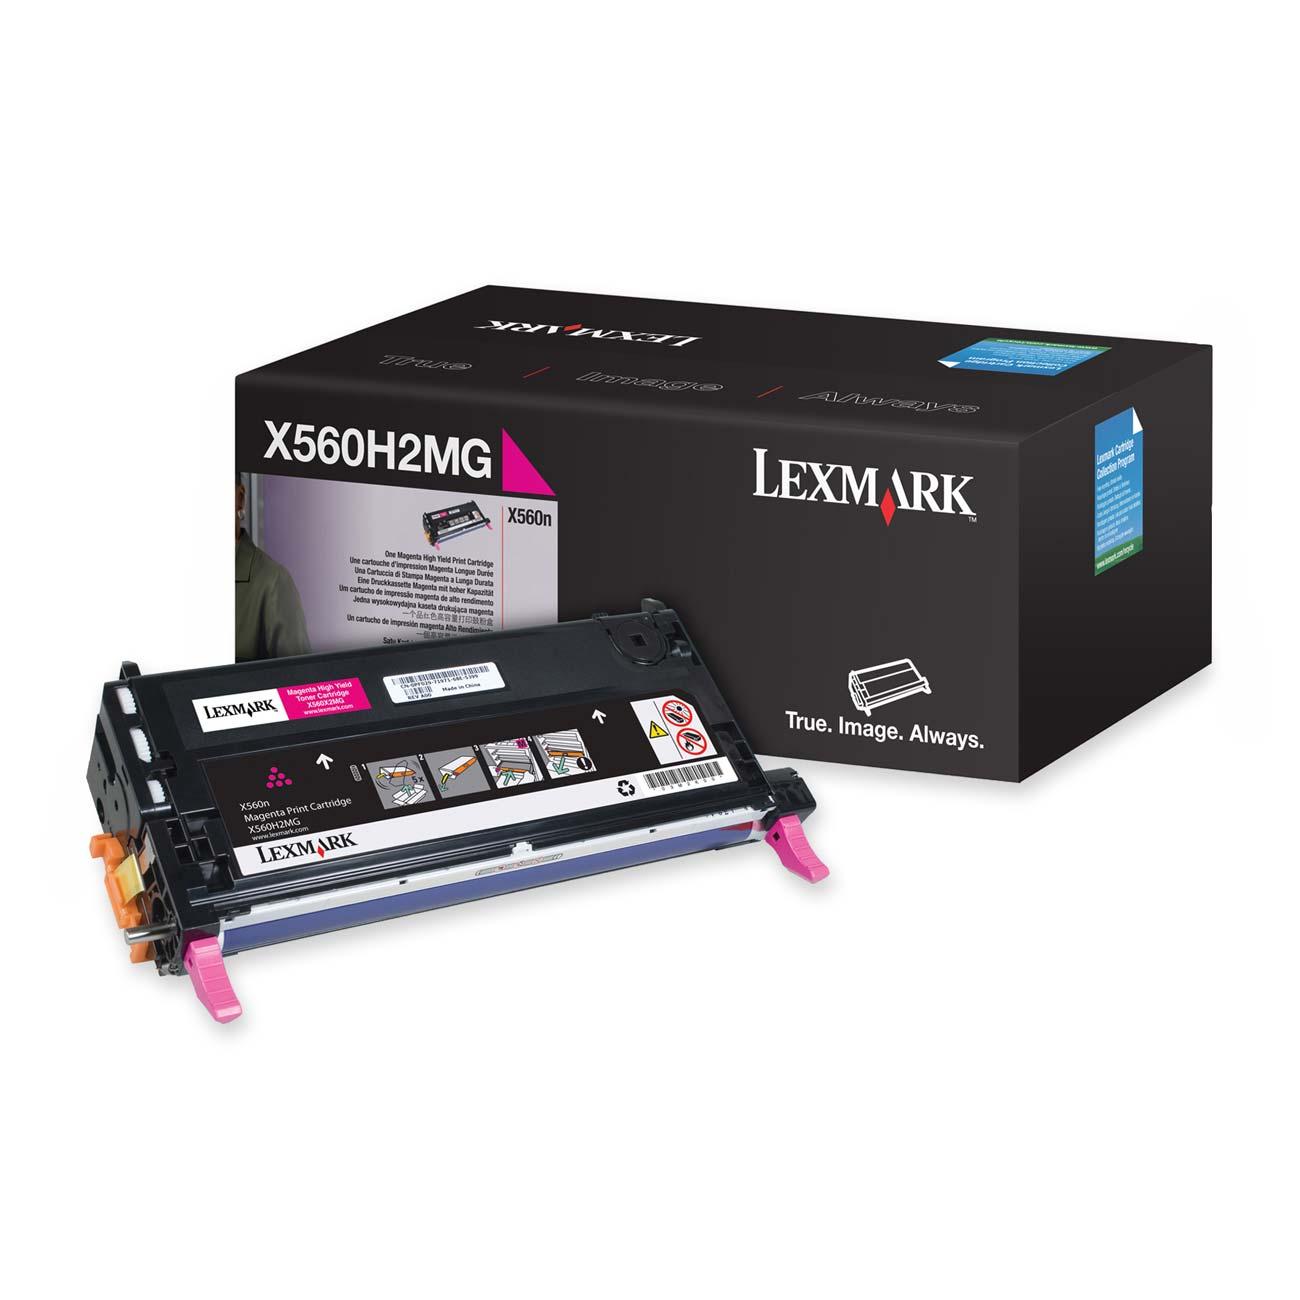 LEXMARK X560H2CG X560 High Yield Print Cartridge Cyan